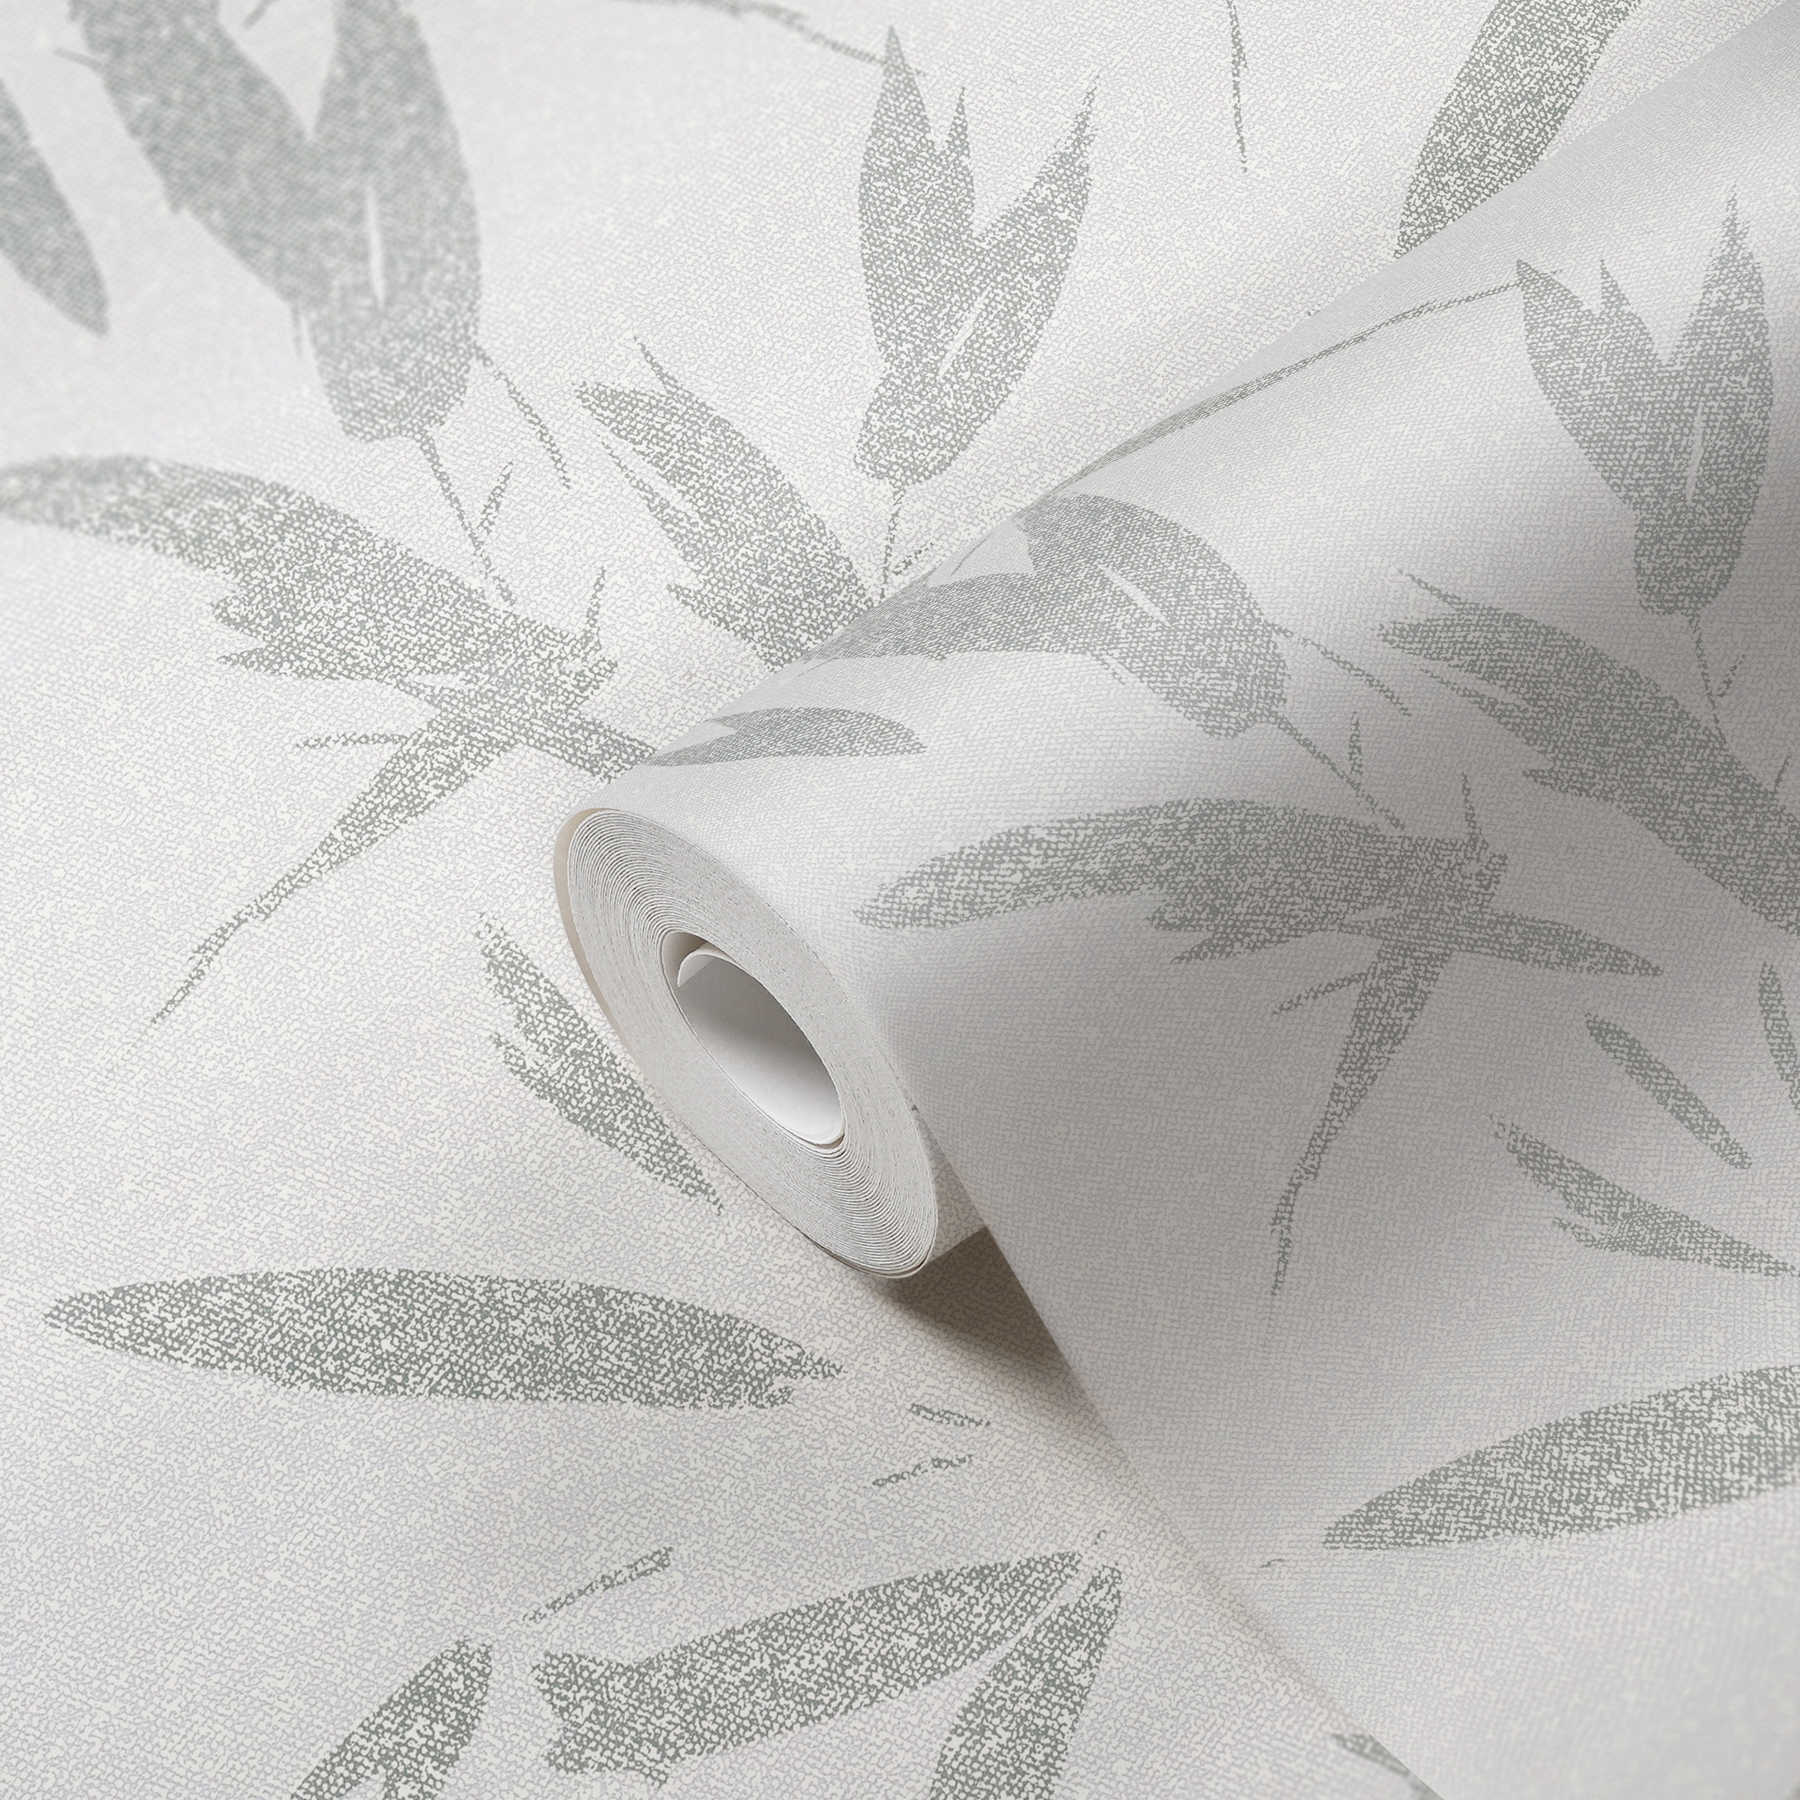             Papel pintado no tejido con motivo de hojas, aspecto textil - blanco, crema, gris
        